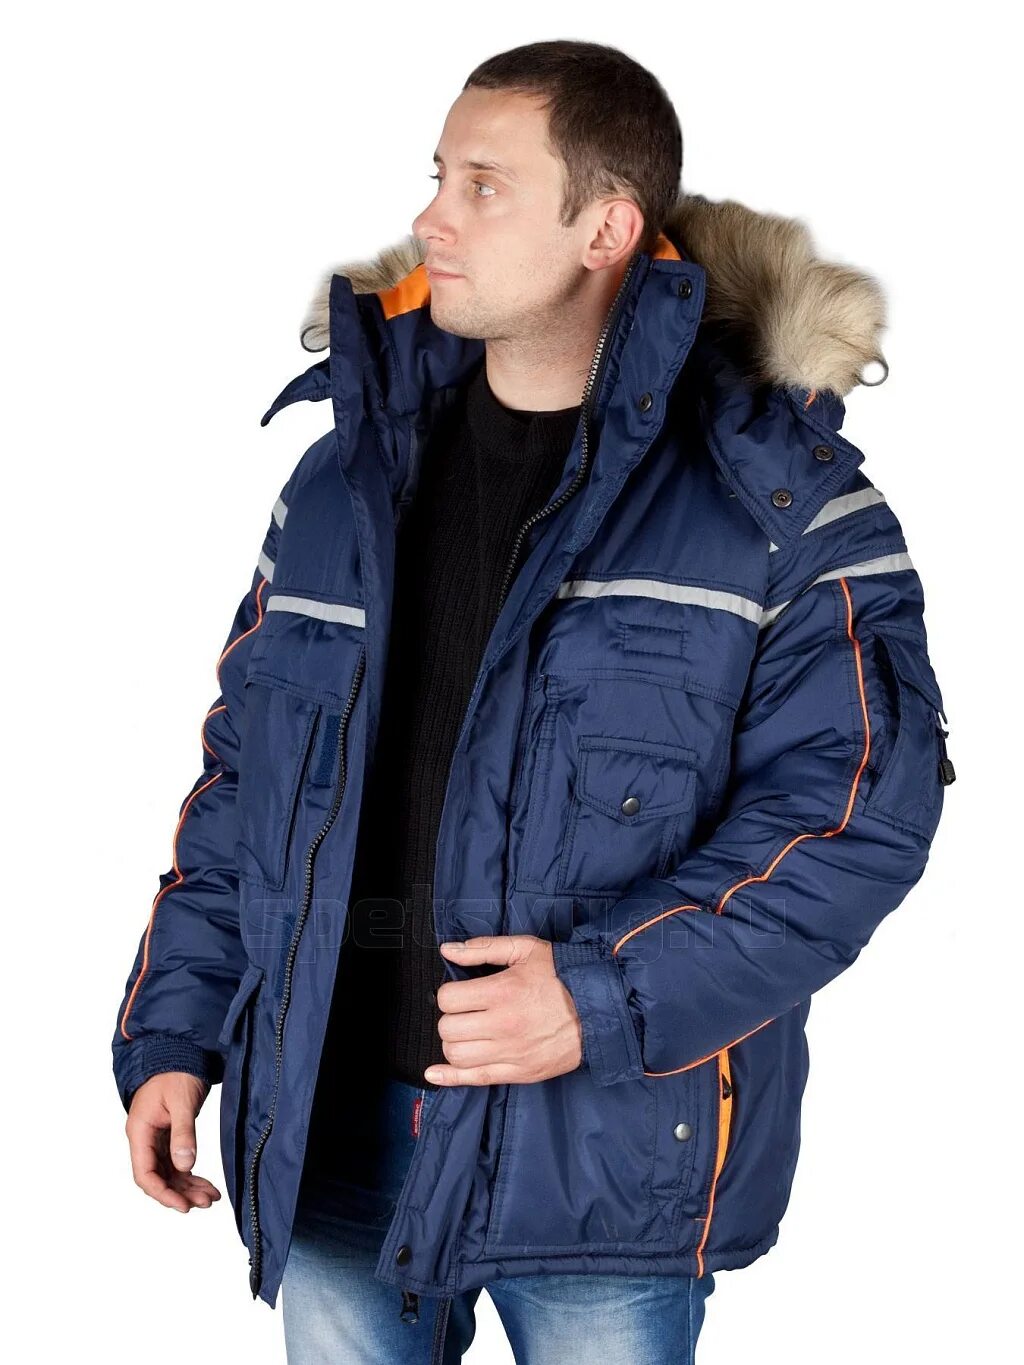 Теплая аляска. Куртка мужская зимняя Аляска Техноавиа. Модель 2.183 куртка Аляска. Куртка Техноавиа Аляска Люкс. Куртка Аляска Люкс.